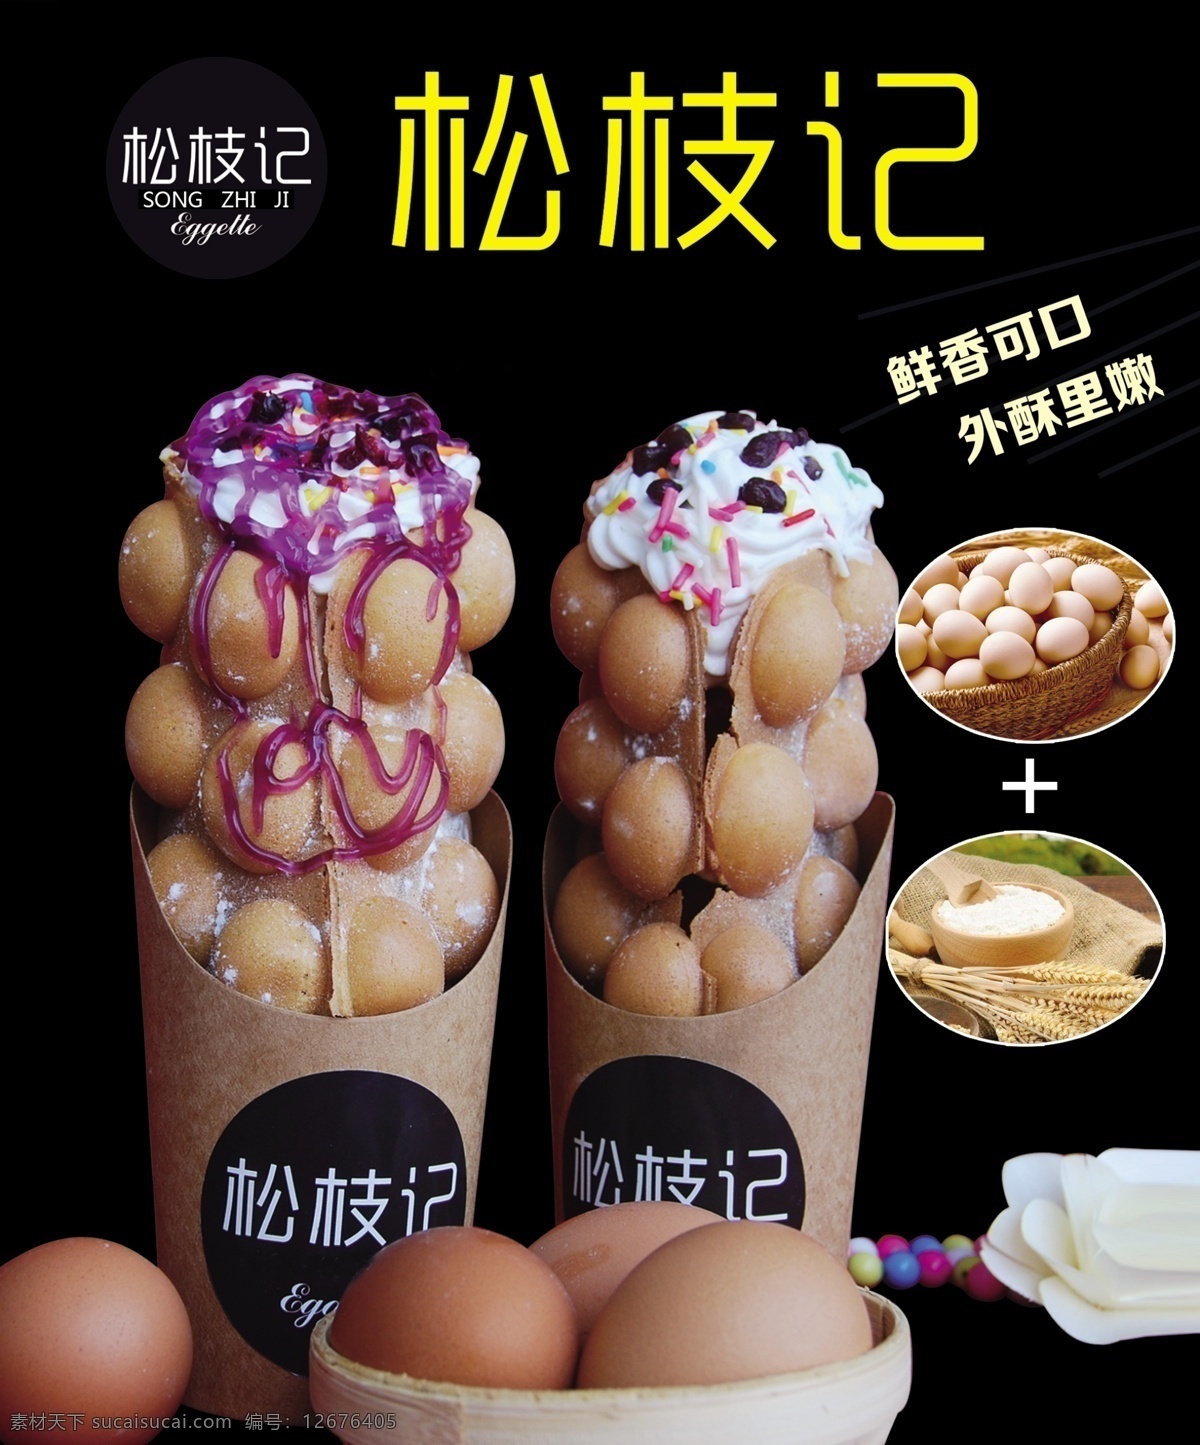 松枝 记 蛋 仔 灯 片 灯片 蛋仔 饮料 滋蛋仔 巧克力 冰淇淋 香港美食 海报 食品 原味 灯箱